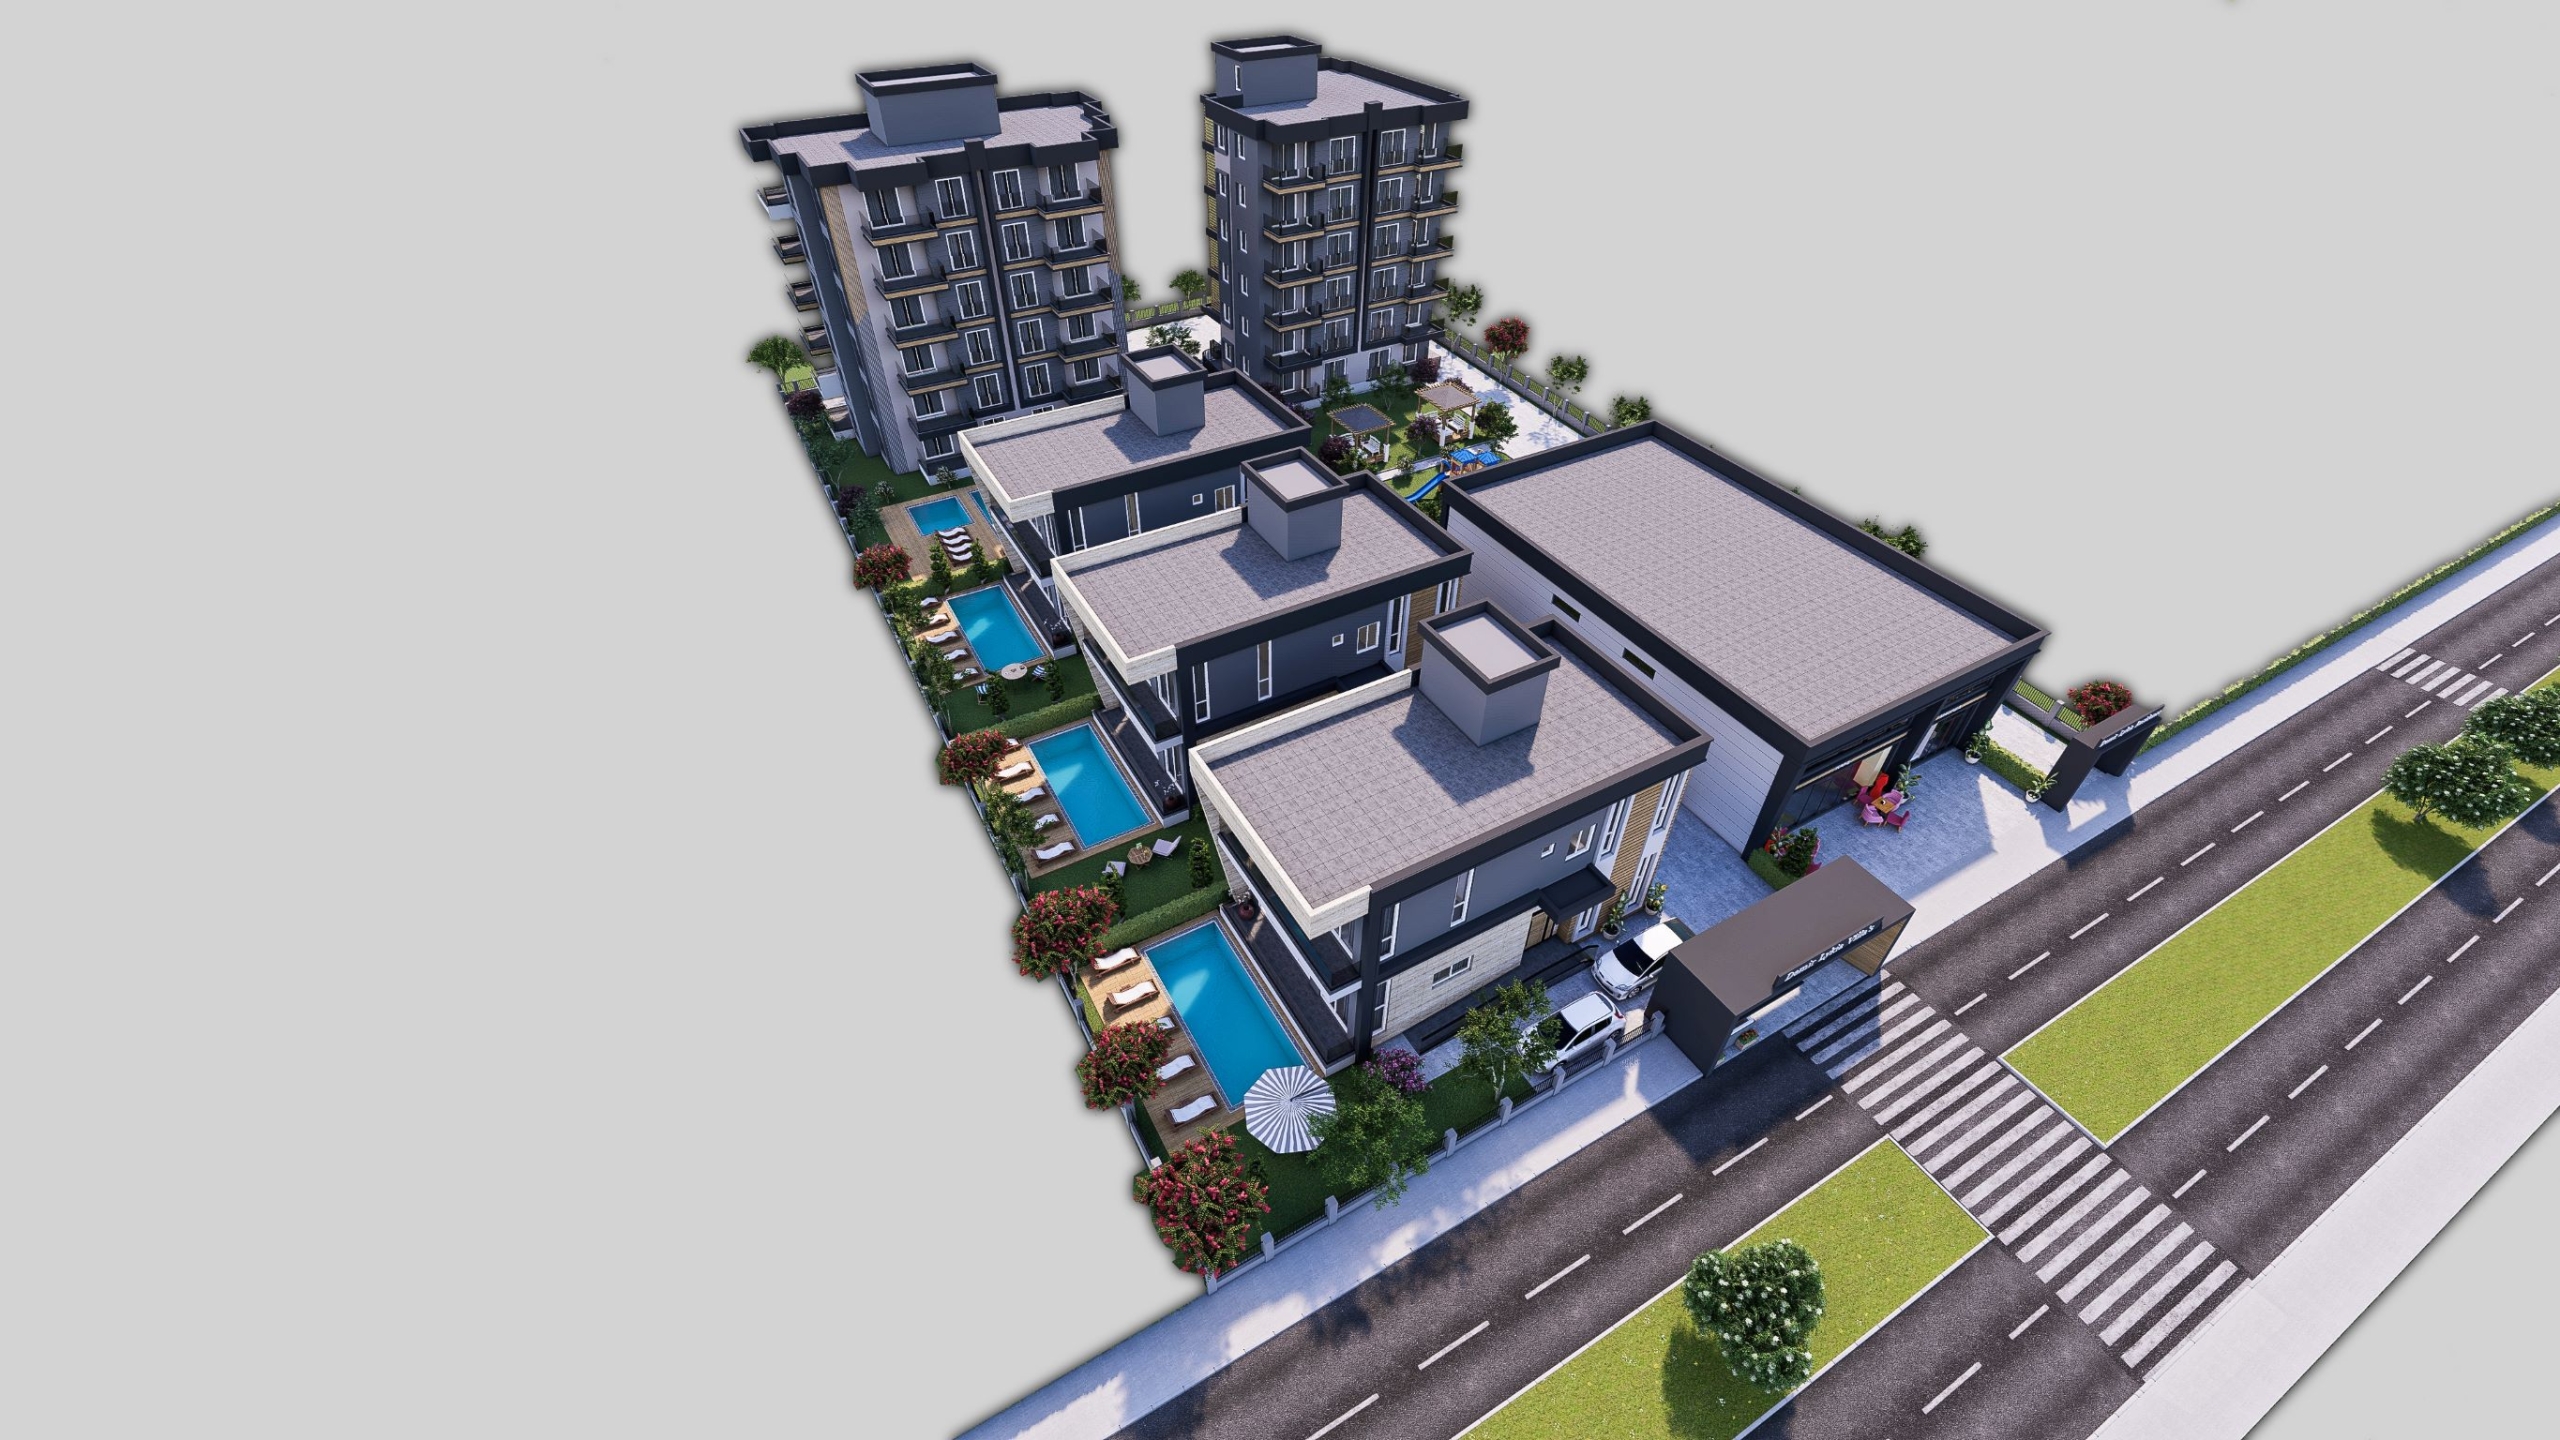 двухкомнатные и трёхкомнатные апартаменты 1+1,2+1 и пятикомнатные виллы дуплекс 4+1 в строящимся жилом комплексе  в микрорайоне Алтынташ, в районе Аксу города Анталия